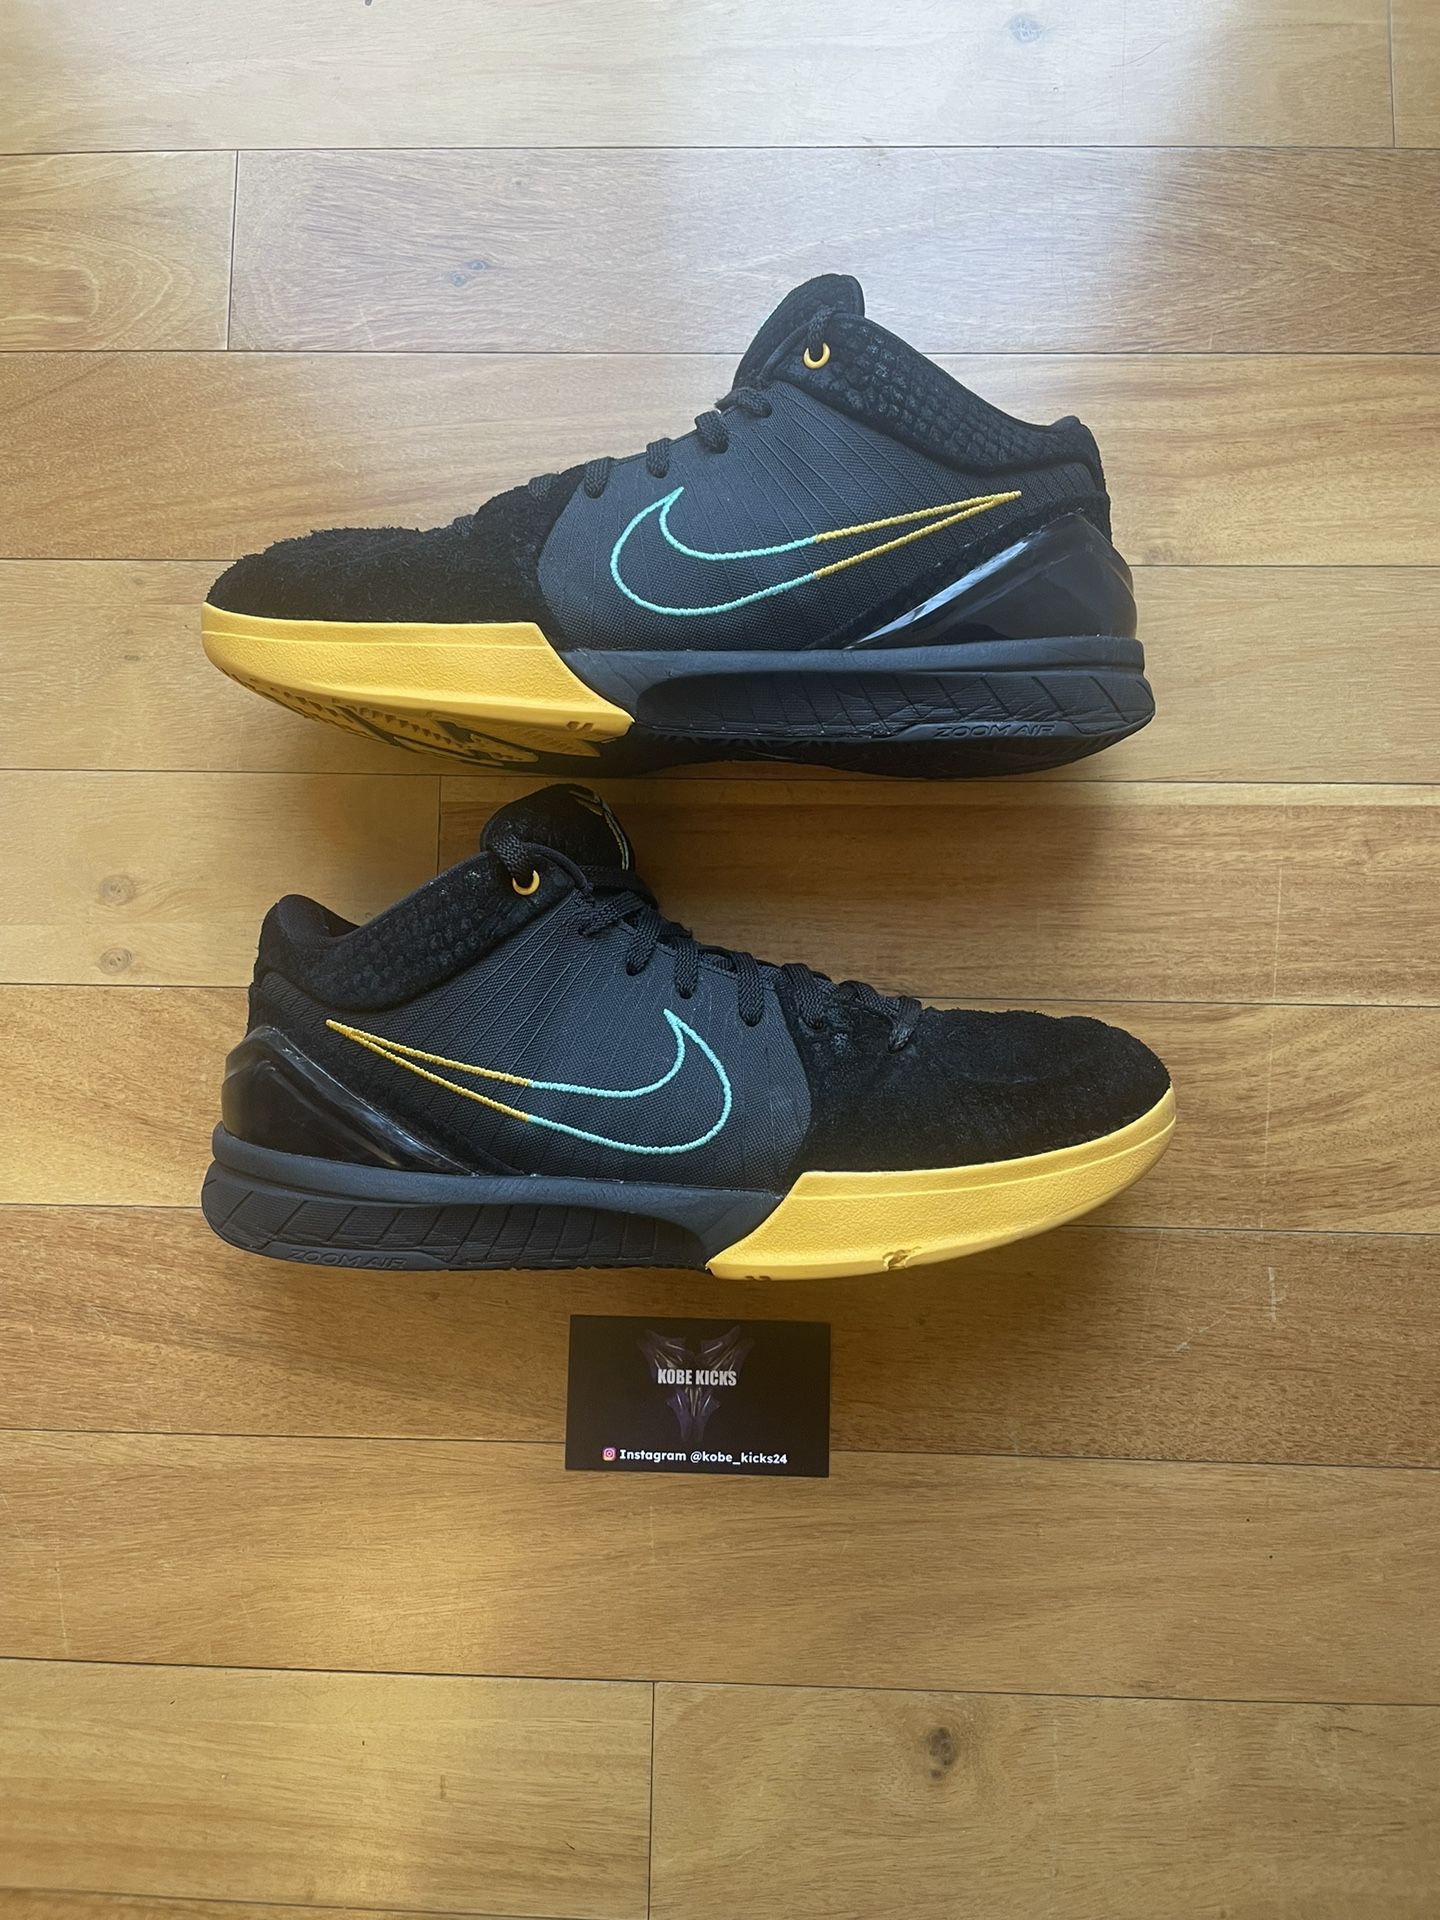 Size 10- Nike Kobe 4 Protro ‘Snakeskin’